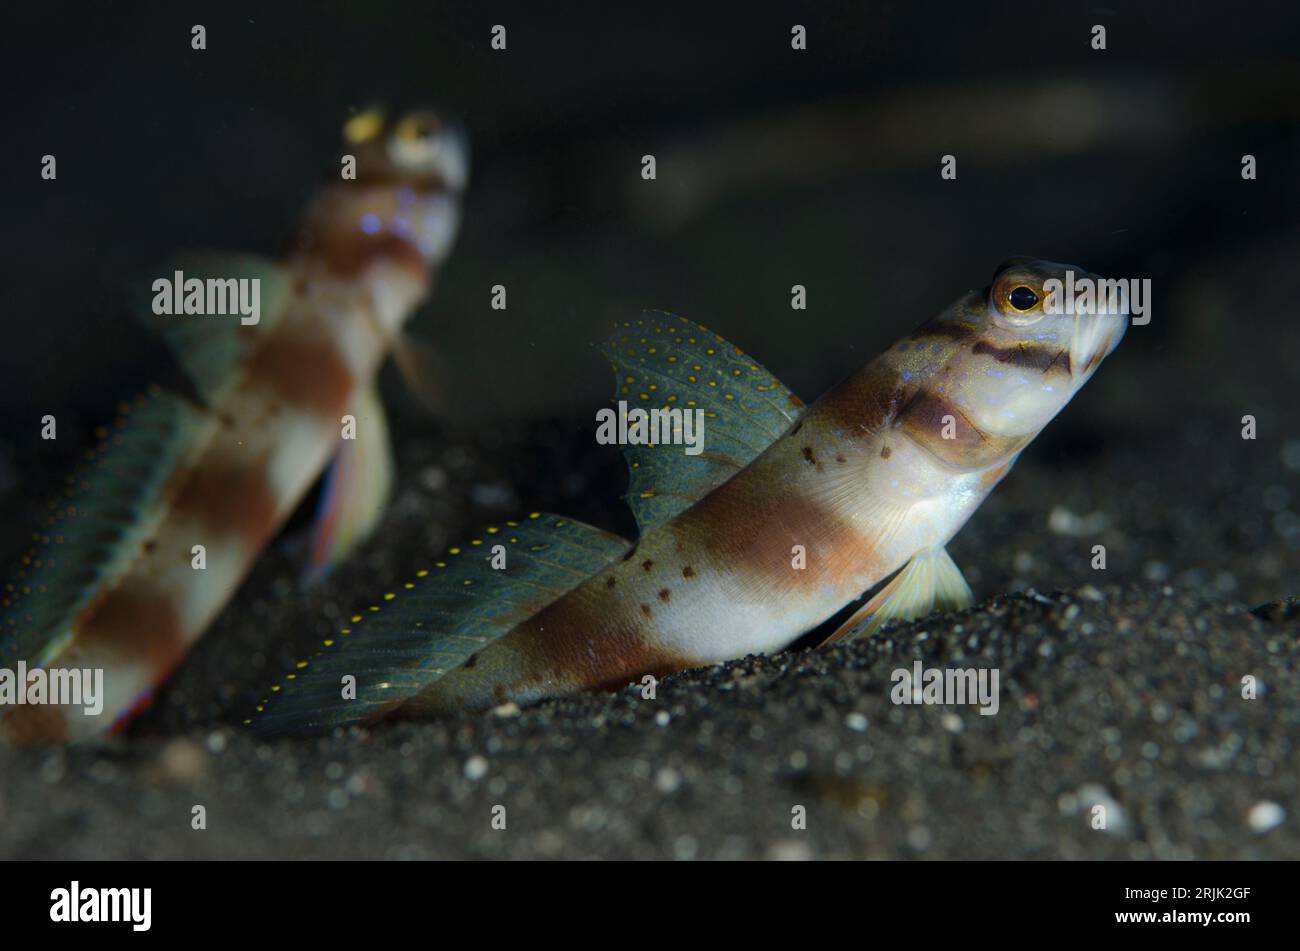 Slantbar Shrimpgoby, Amblyeleotris diagonalis, pair standing at hole entrance on black sand, Aer Bajo dive site, Lembeh Straits, Sulawesi, Indonesia Stock Photo